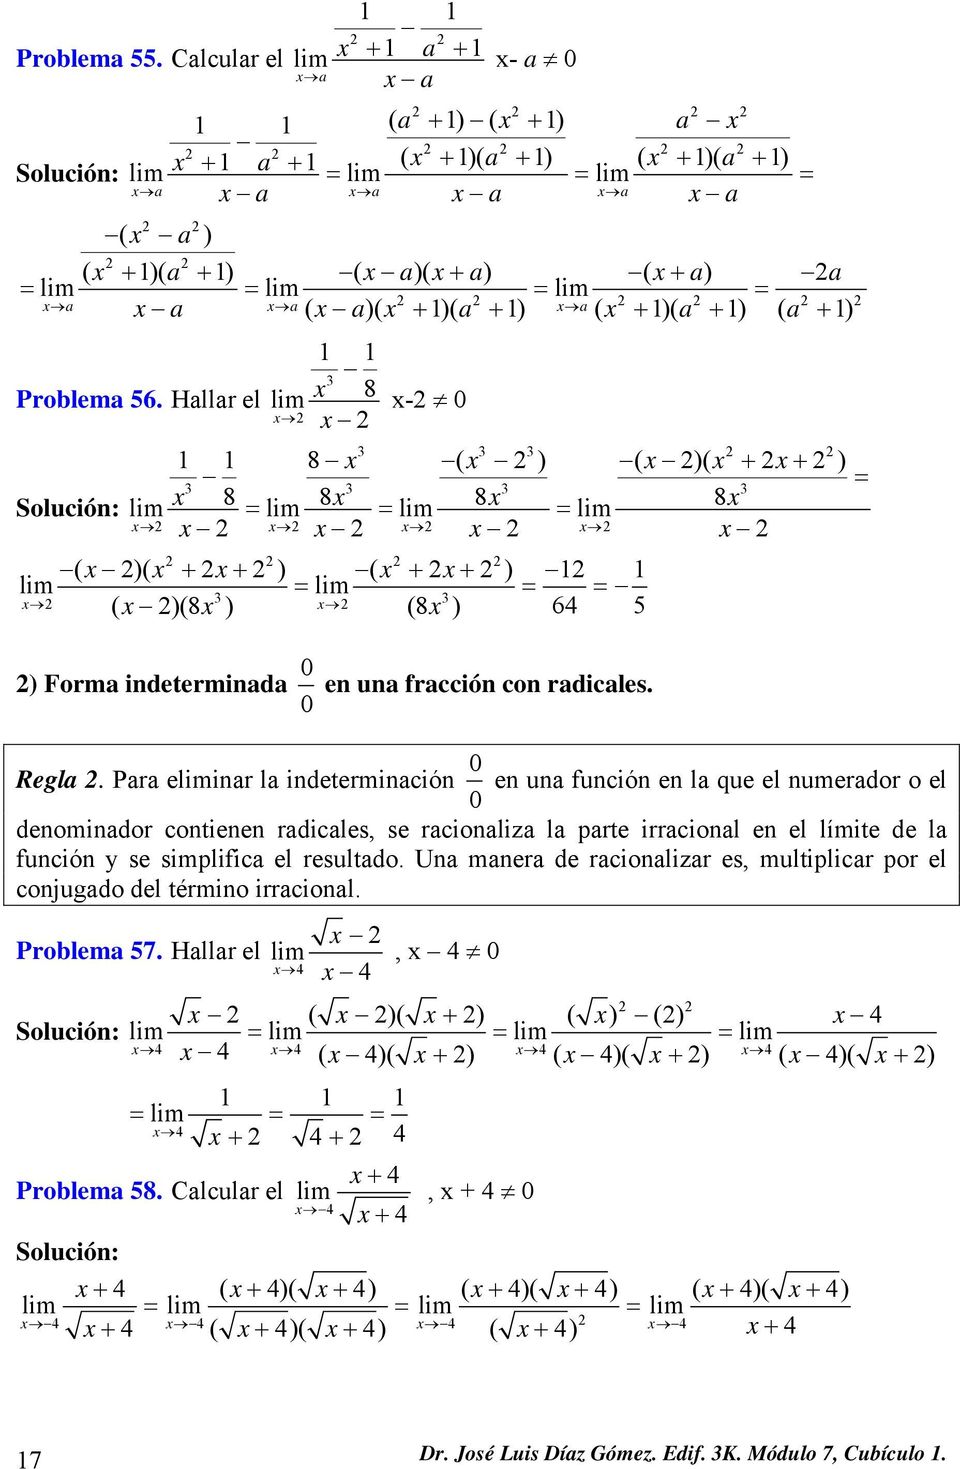 Para einar la indeterminación 0 0 en una función en la que el numerador o el denominador contienen radicales, se racionaliza la parte irracional en el límite de la función y se simplifica el